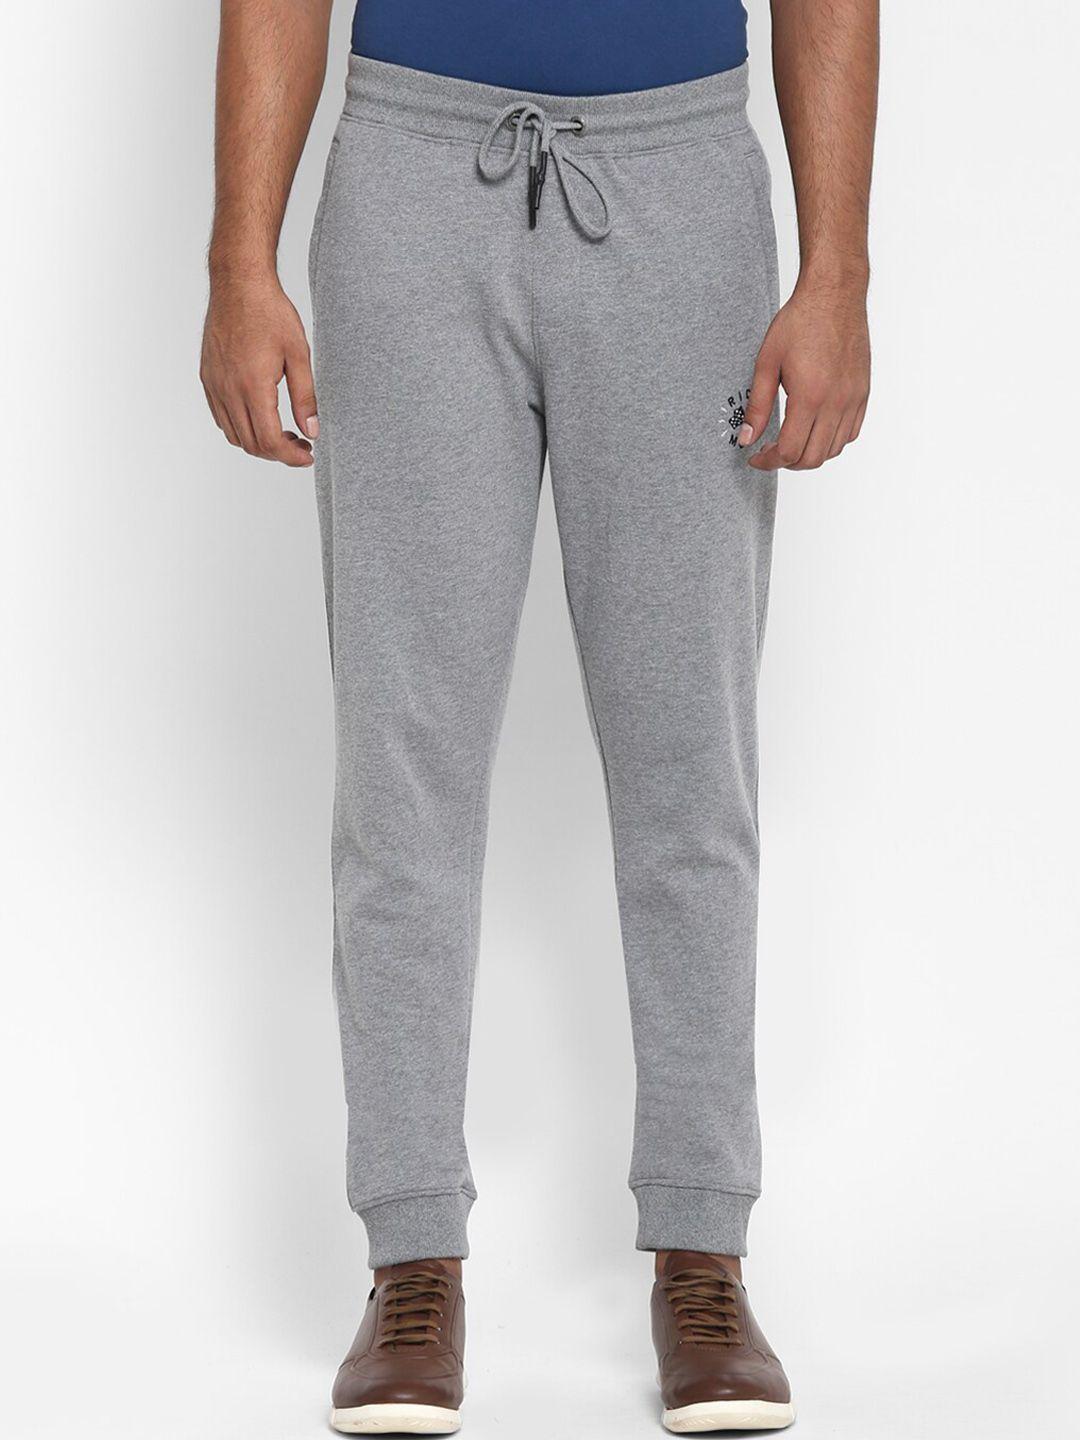 royal enfield men grey cotton joggers trousers